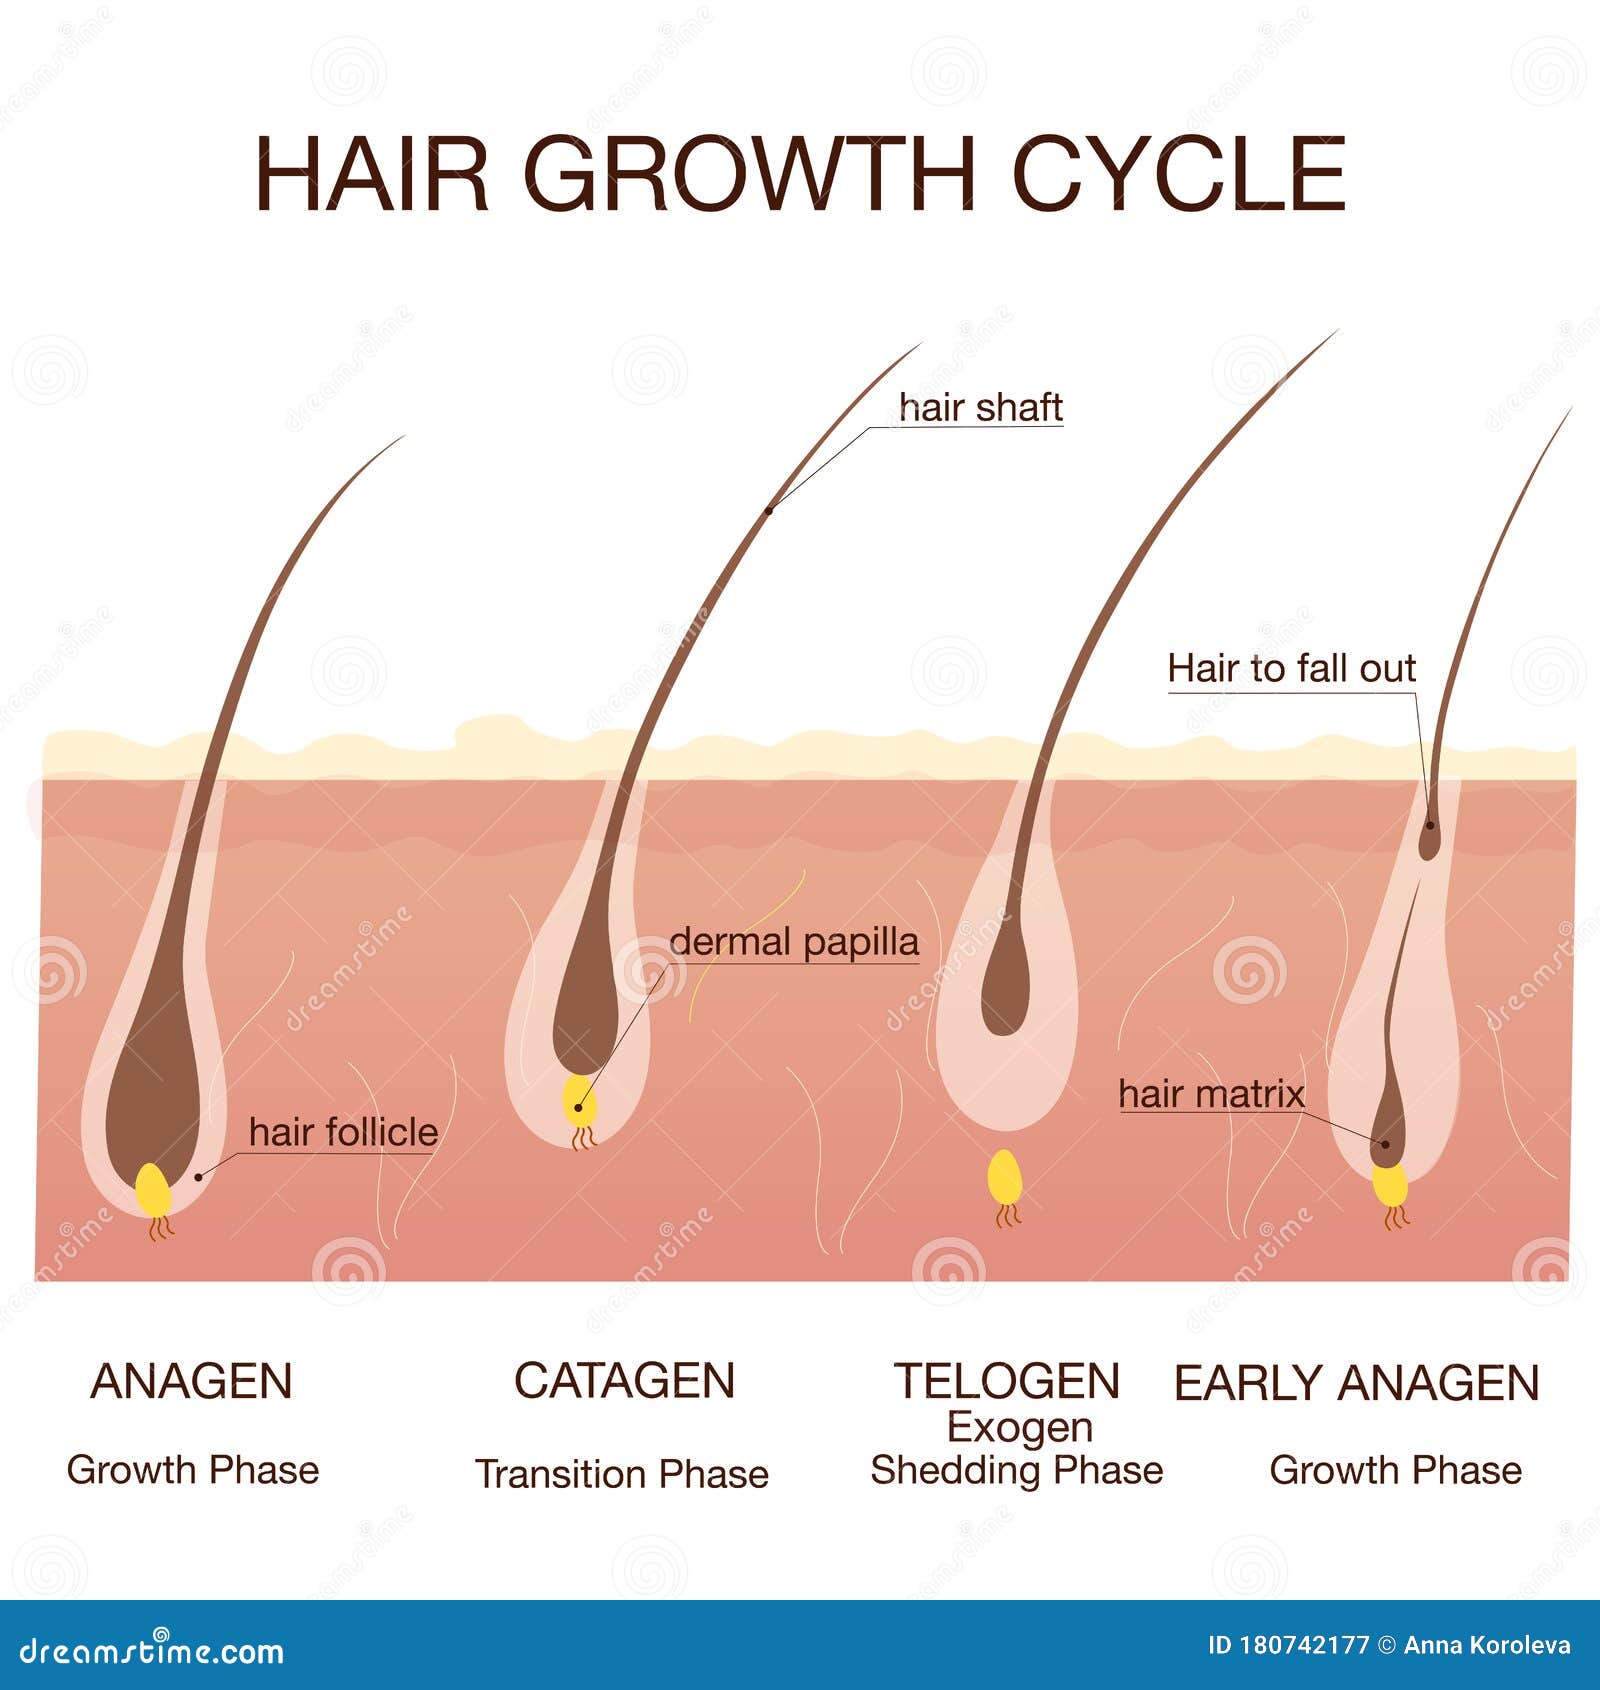 不要过度担心掉发，头发也有生长周期 - 知乎